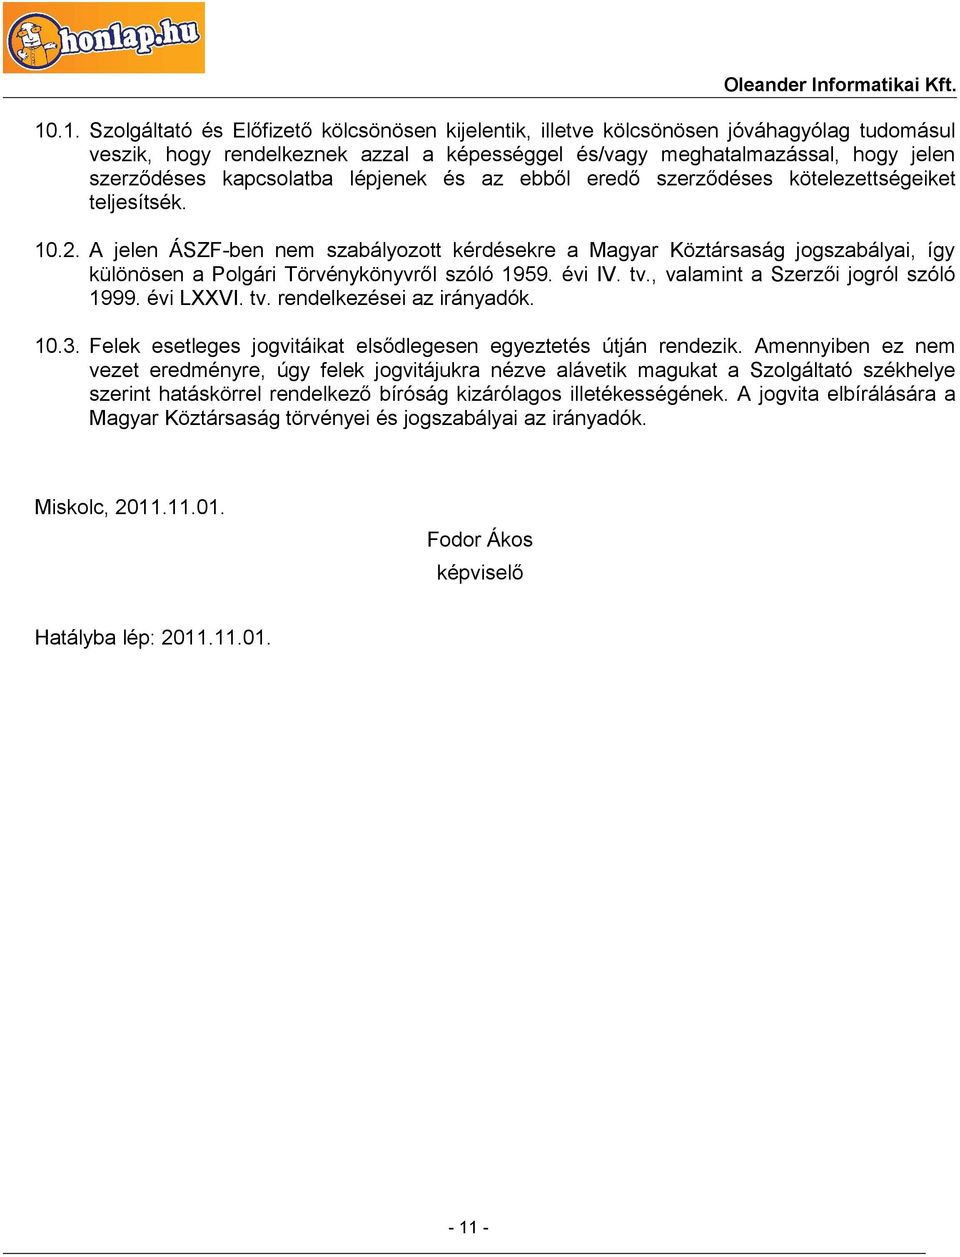 A jelen ÁSZF-ben nem szabályozott kérdésekre a Magyar Köztársaság jogszabályai, így különösen a Polgári Törvénykönyvről szóló 1959. évi IV. tv., valamint a Szerzői jogról szóló 1999. évi LXXVI. tv. rendelkezései az irányadók.